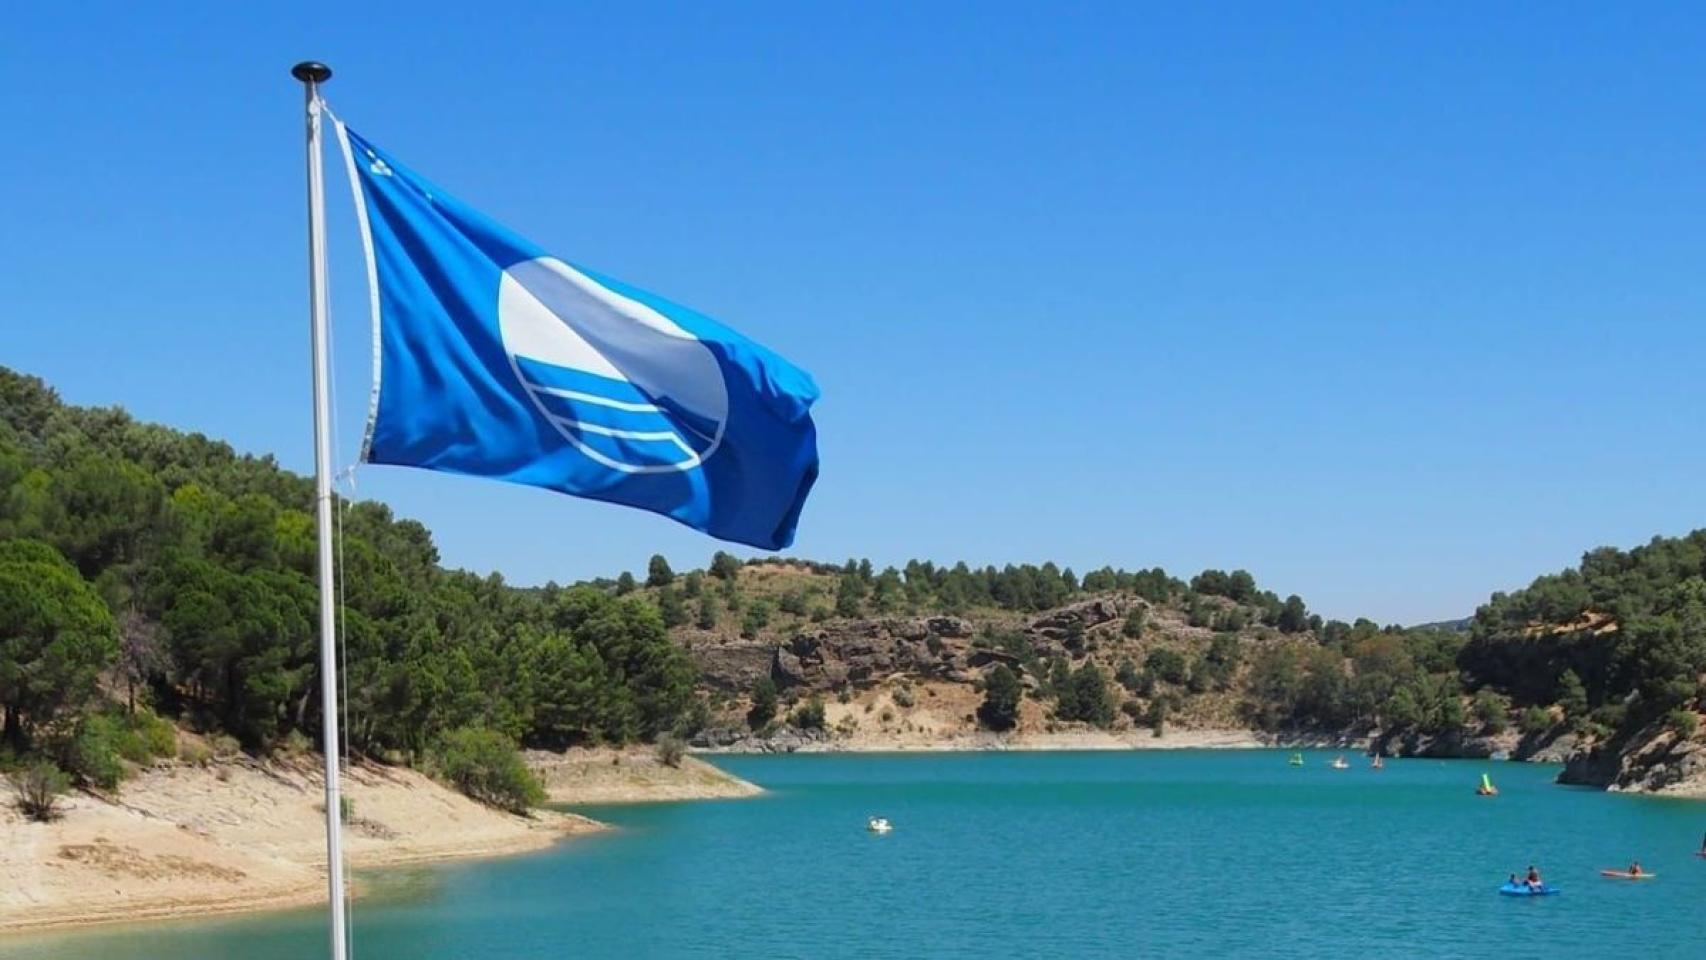 Ardales mantiene con orgullo su bandera azul como playa interior.